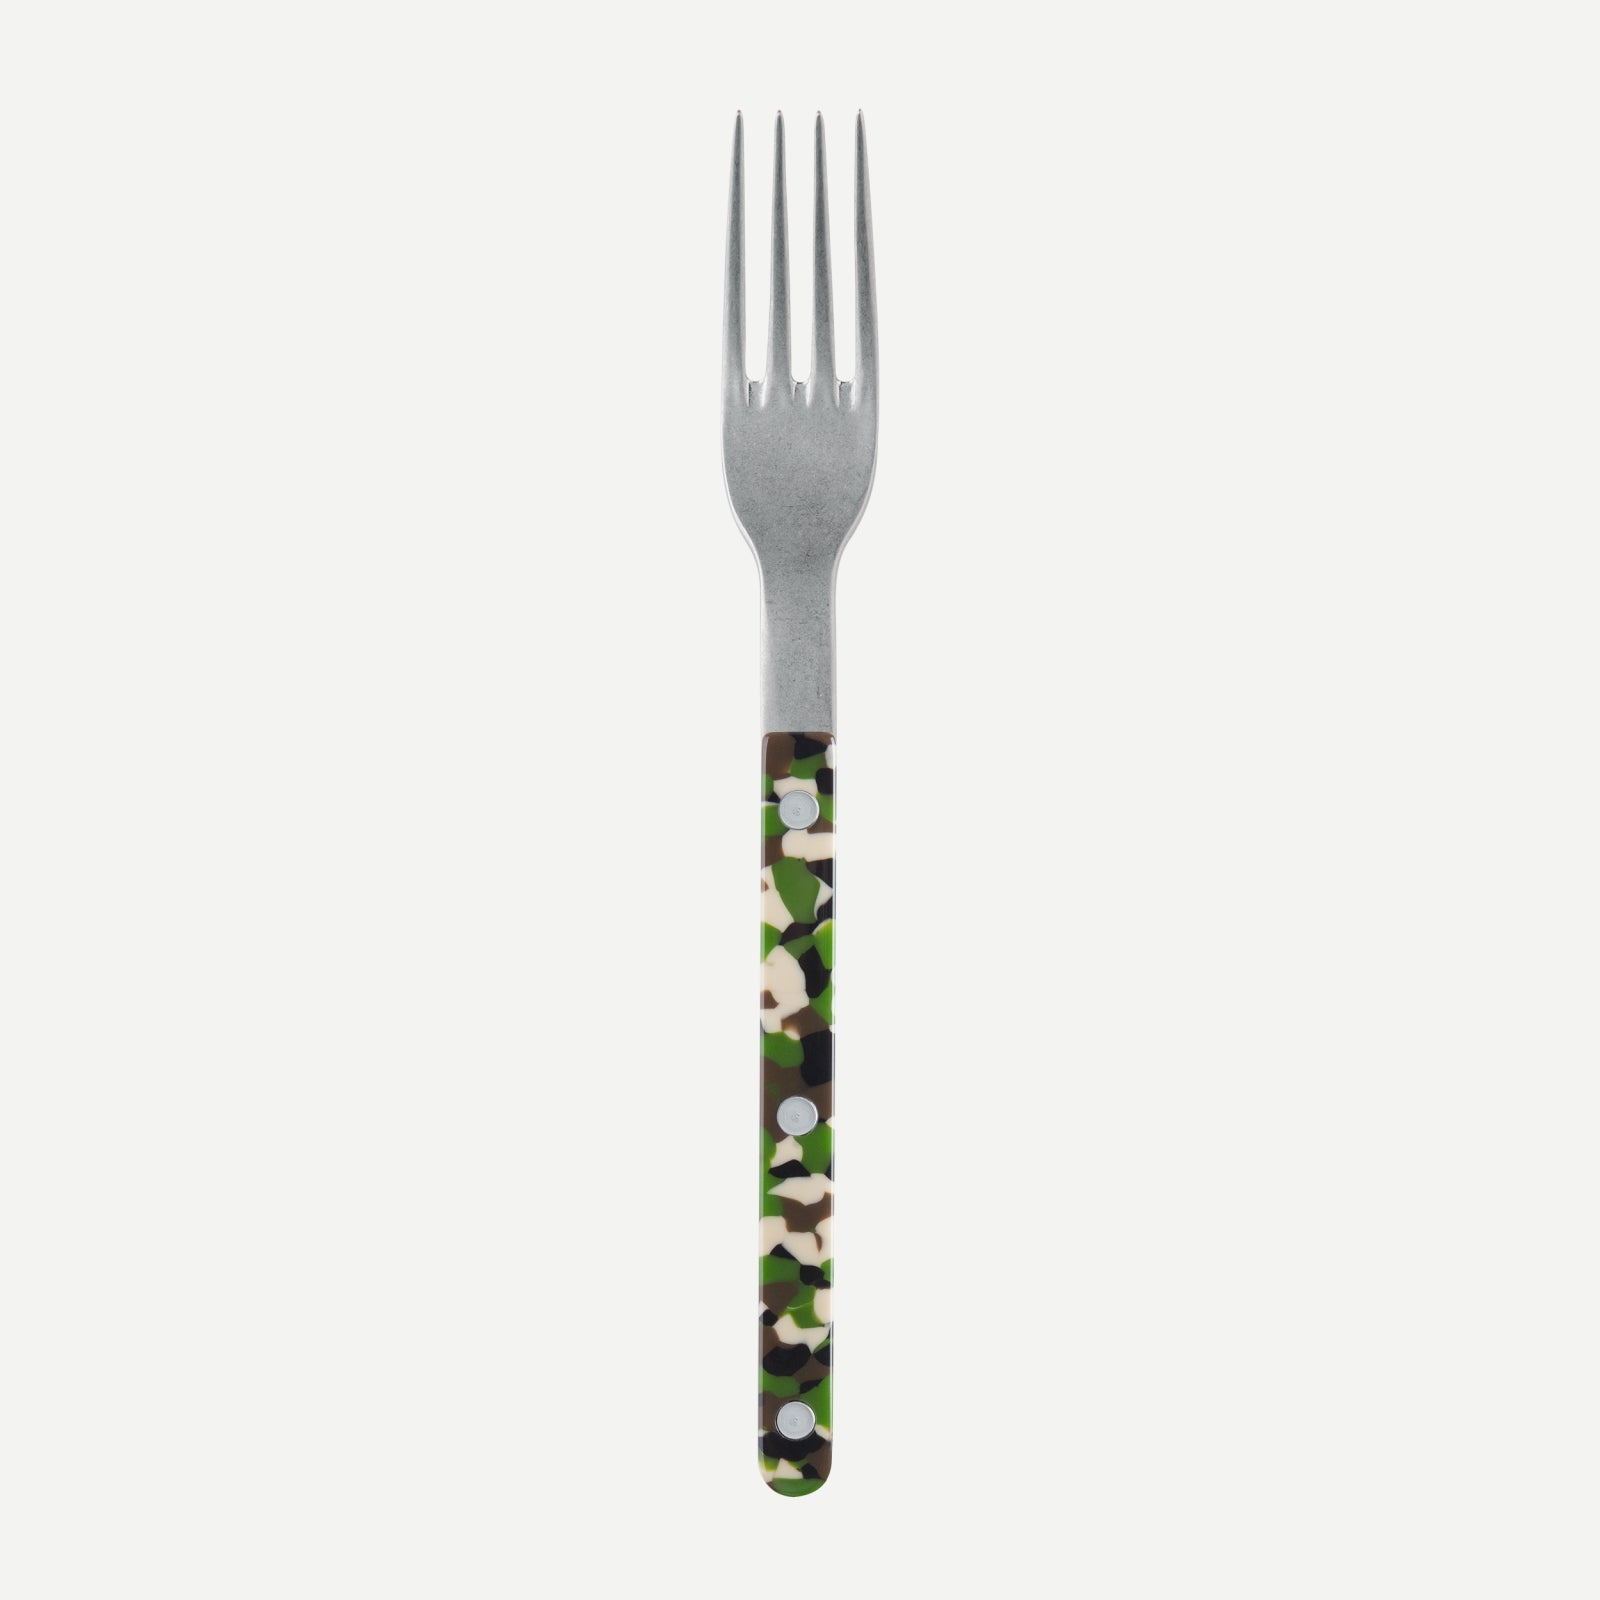 Dinner fork - Bistrot vintage Camouflage - Green